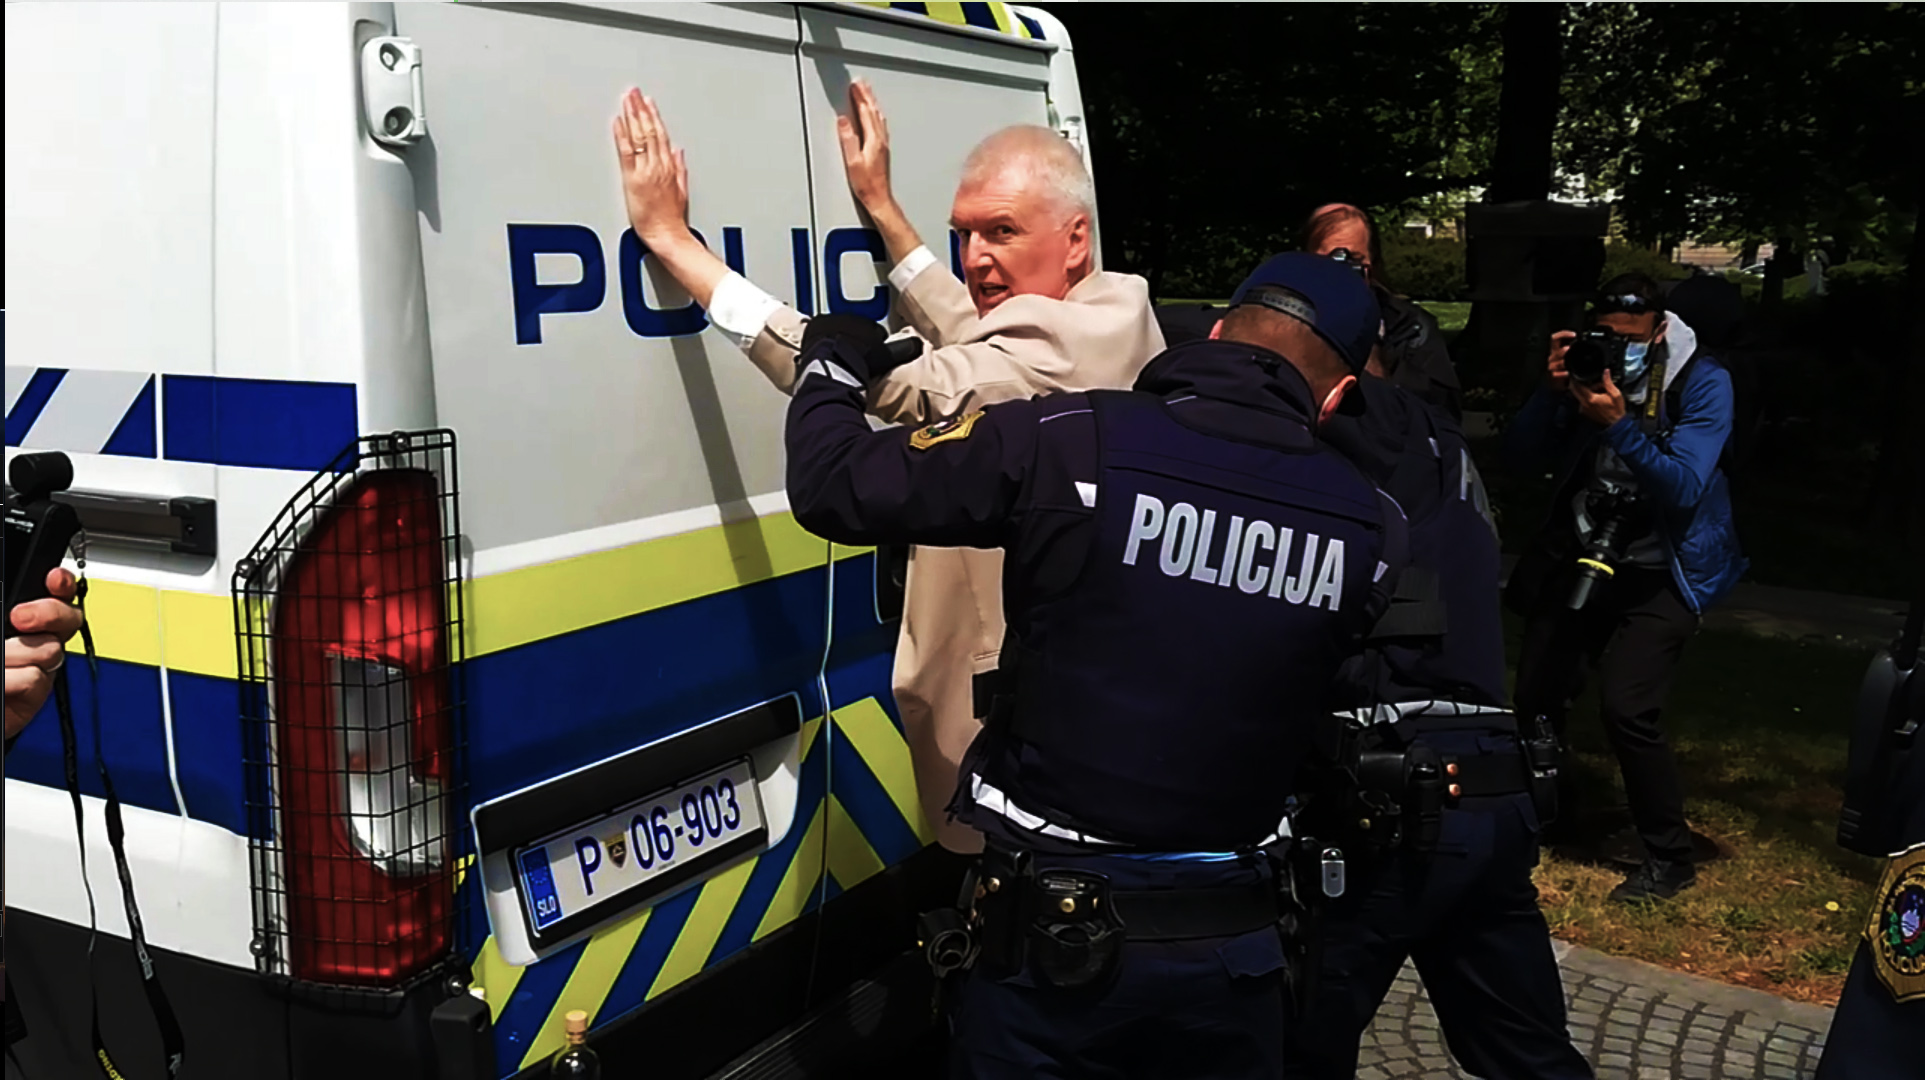 (VIDEO) Protesti: Policija danes okoli 12.00 na Trgu republike aretirala majorja Ladislava Troho, ga pospravila v policijsko vozilo in odpeljala